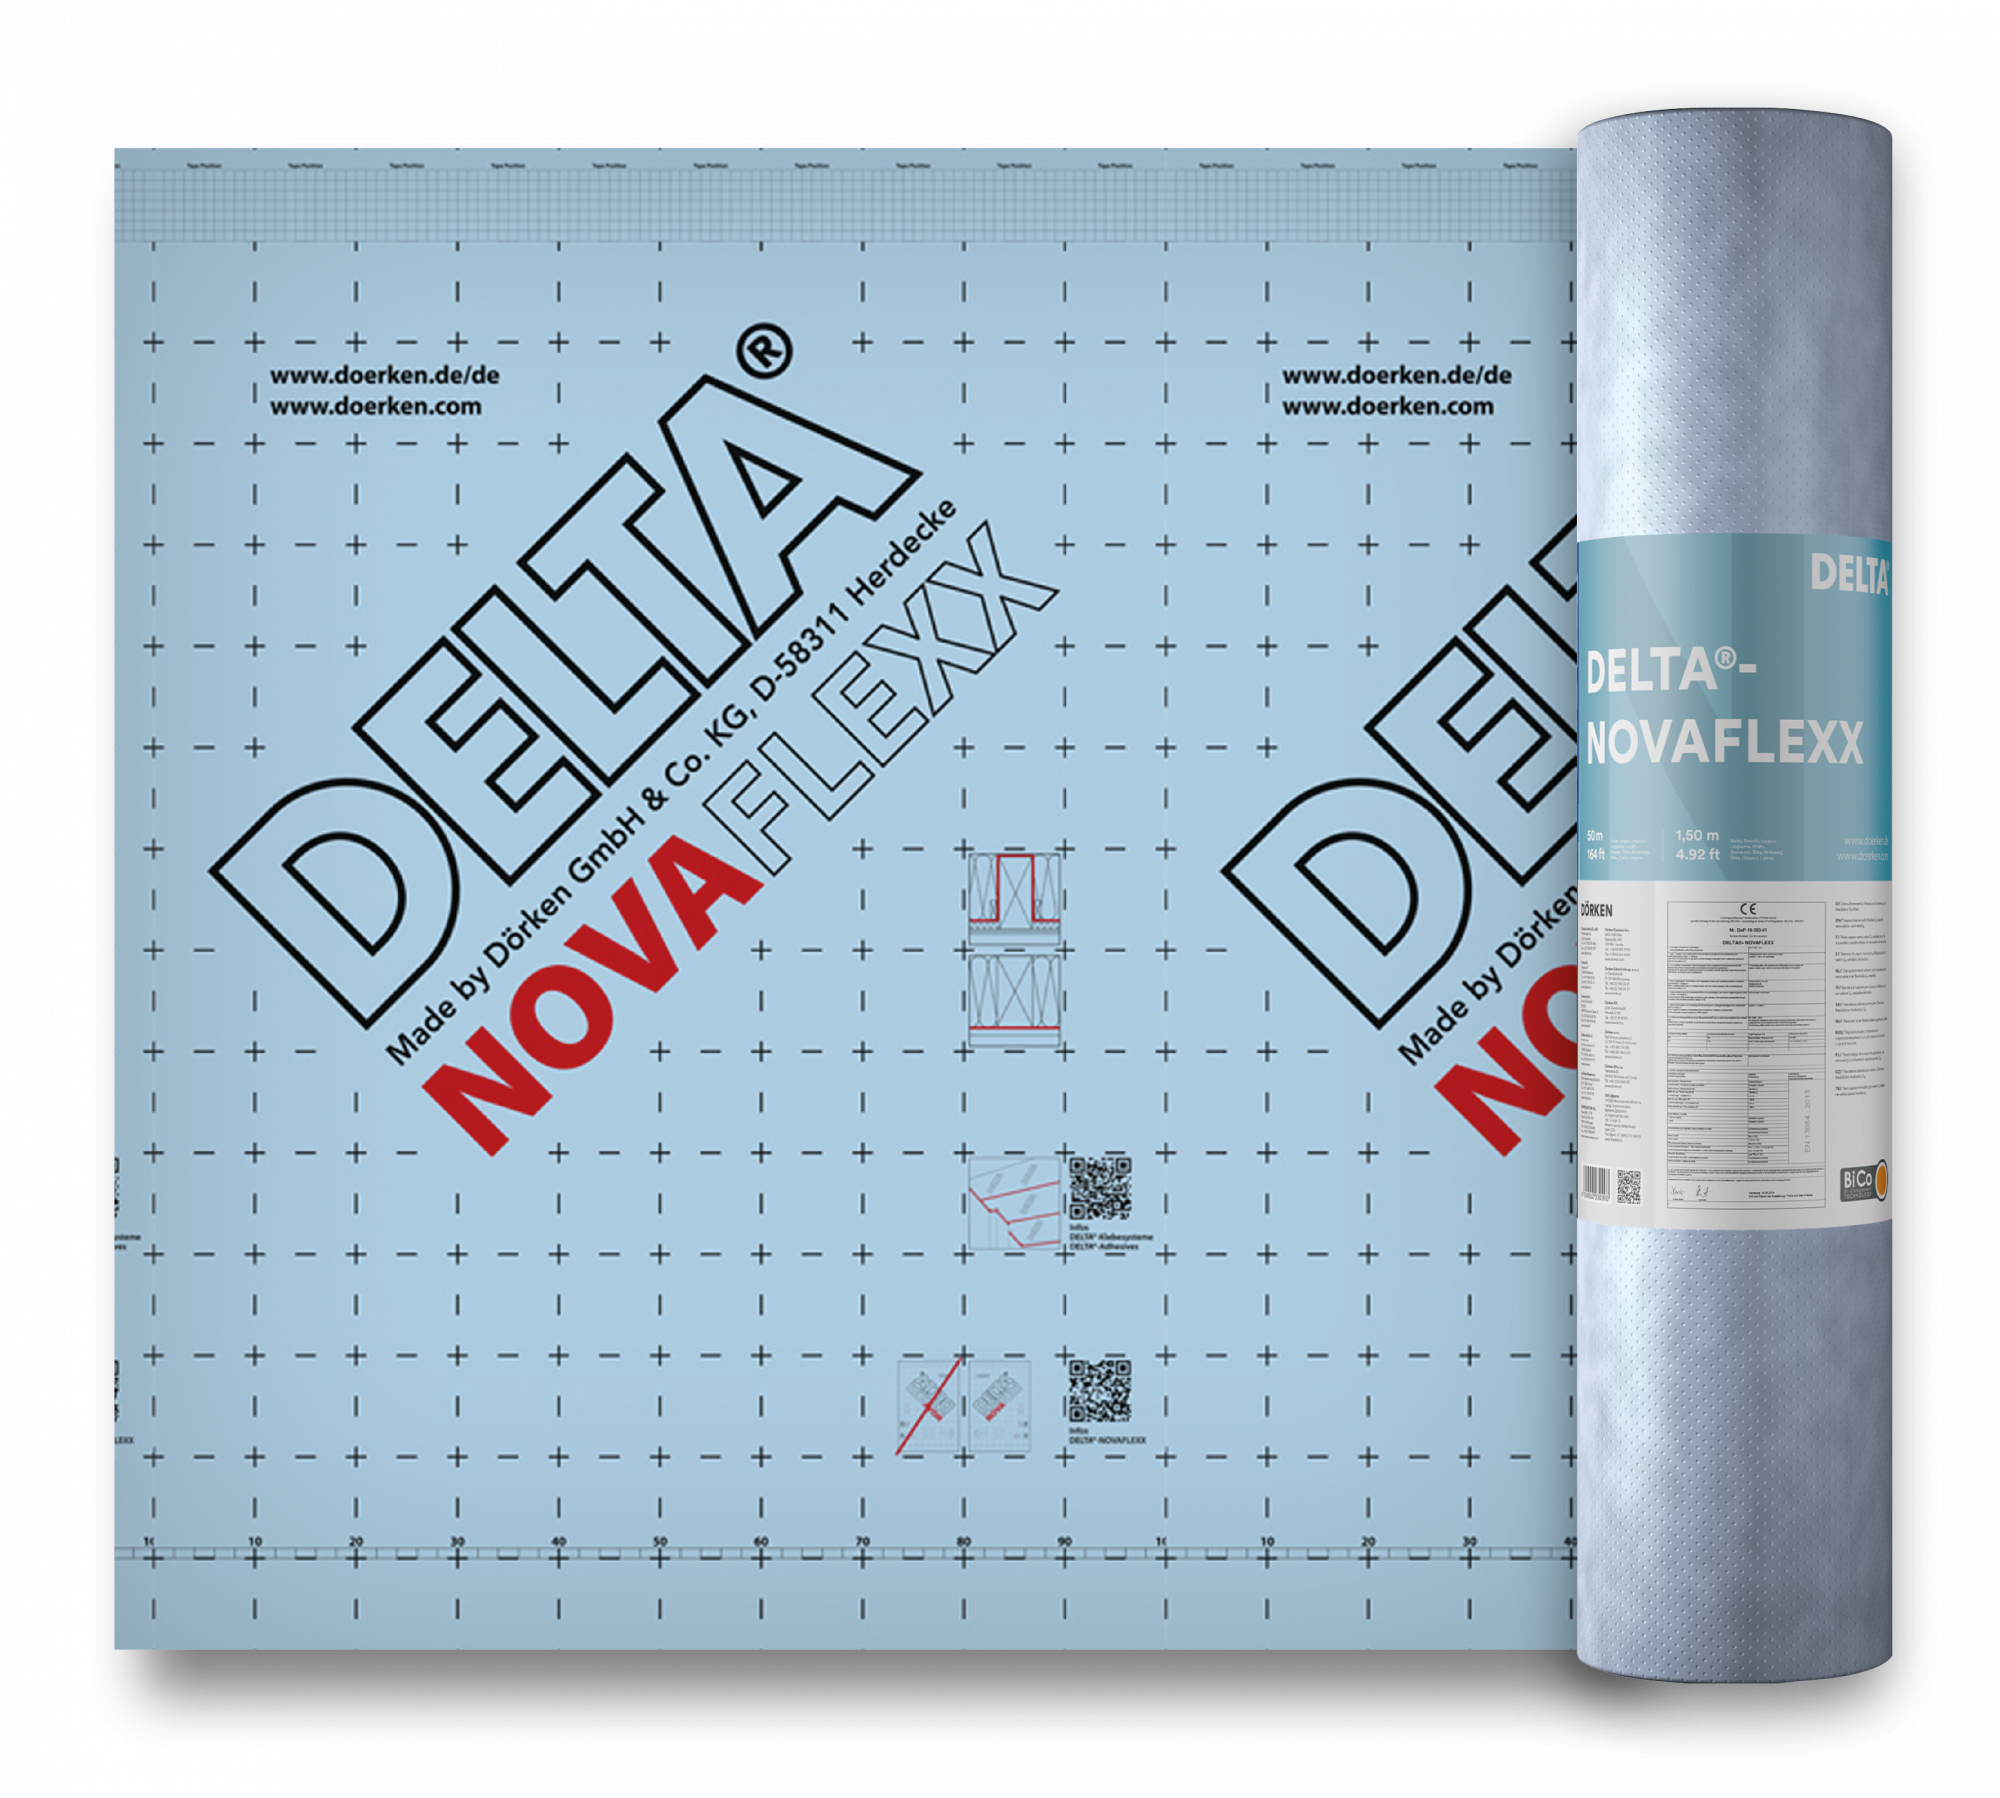 DELTA-NOVAFLEXX адаптивная пароизоляционная плёнка с переменной паропроницаемостью, для  реконструкции и нового строительства, Sd=0,2/5 м